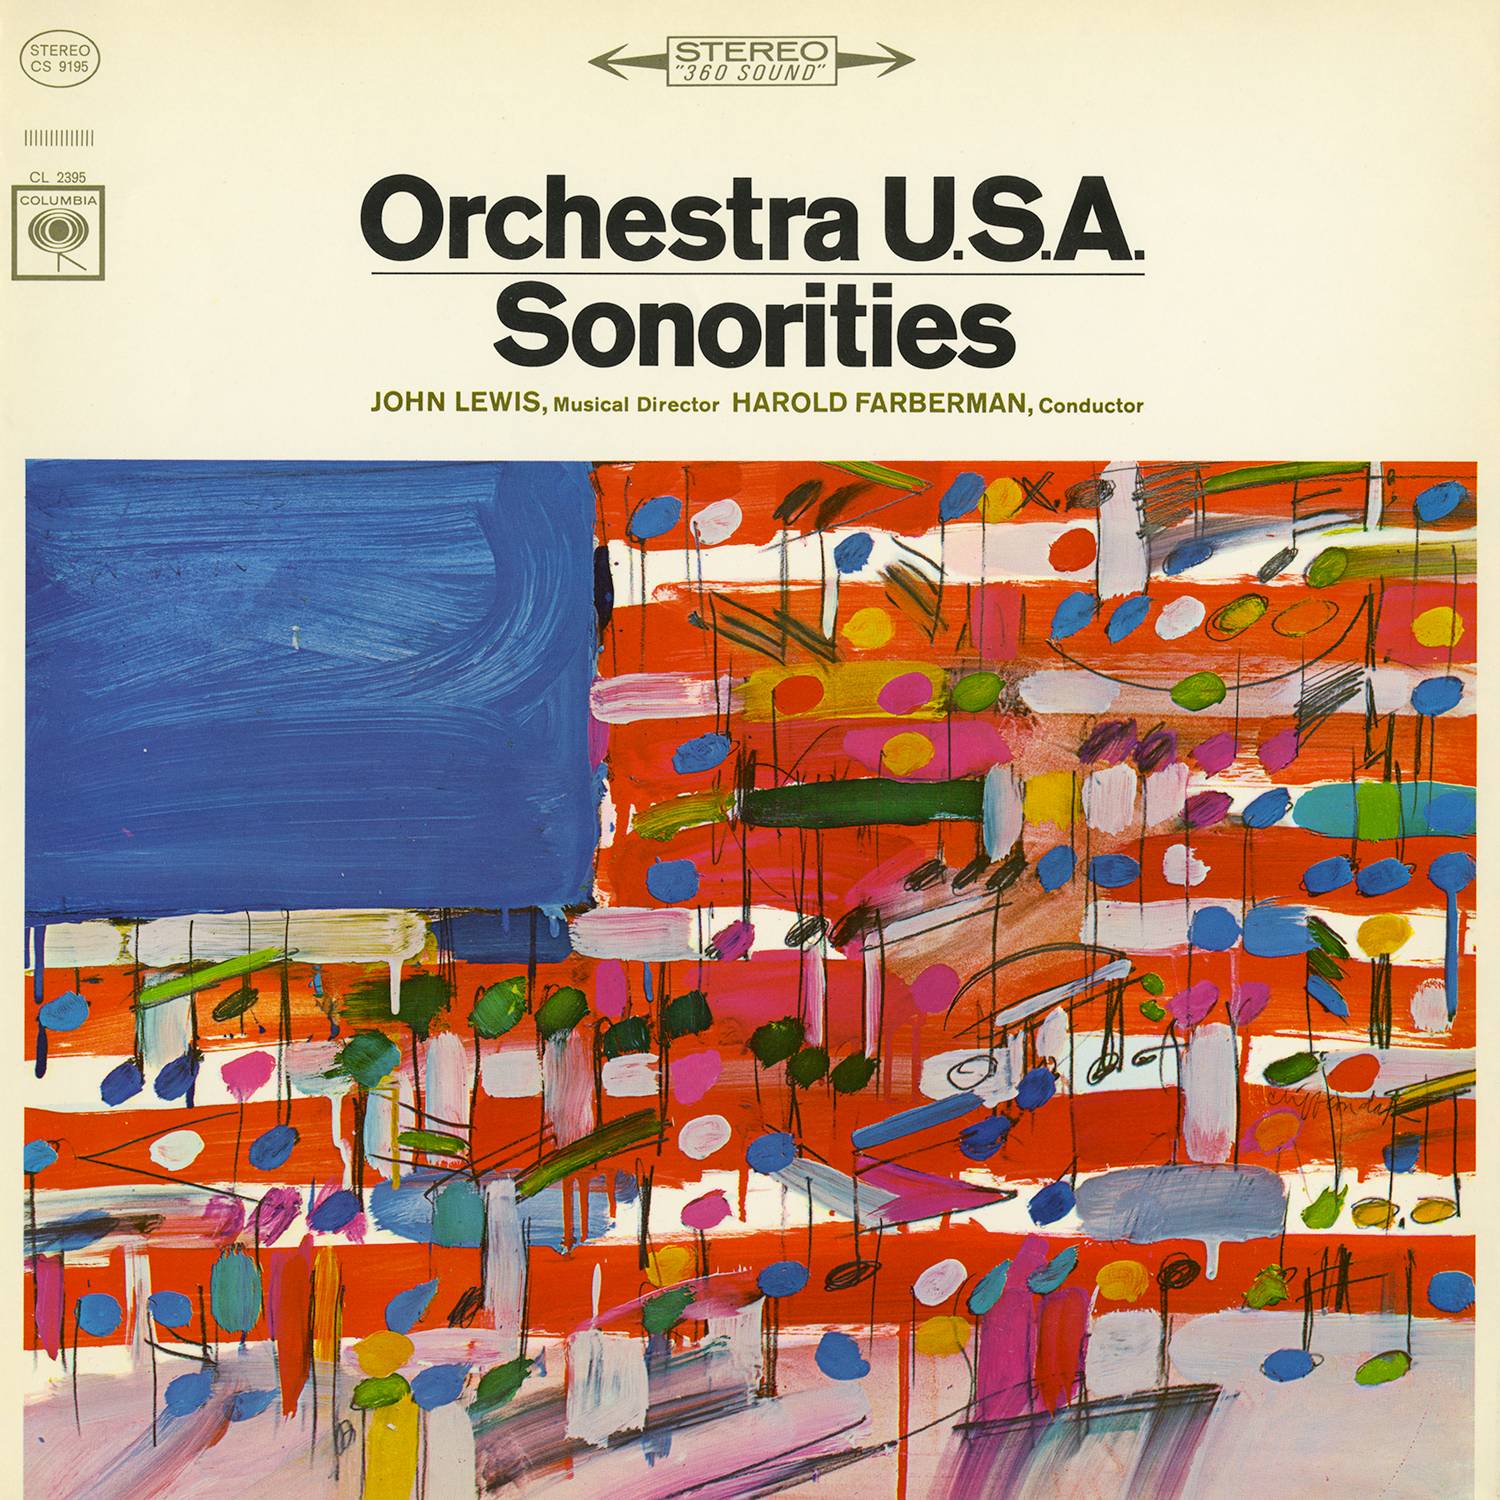 Orchestra U.S.A. - Sonorities (1965/2015) [AcousticSounds FLAC 24bit/96kHz]